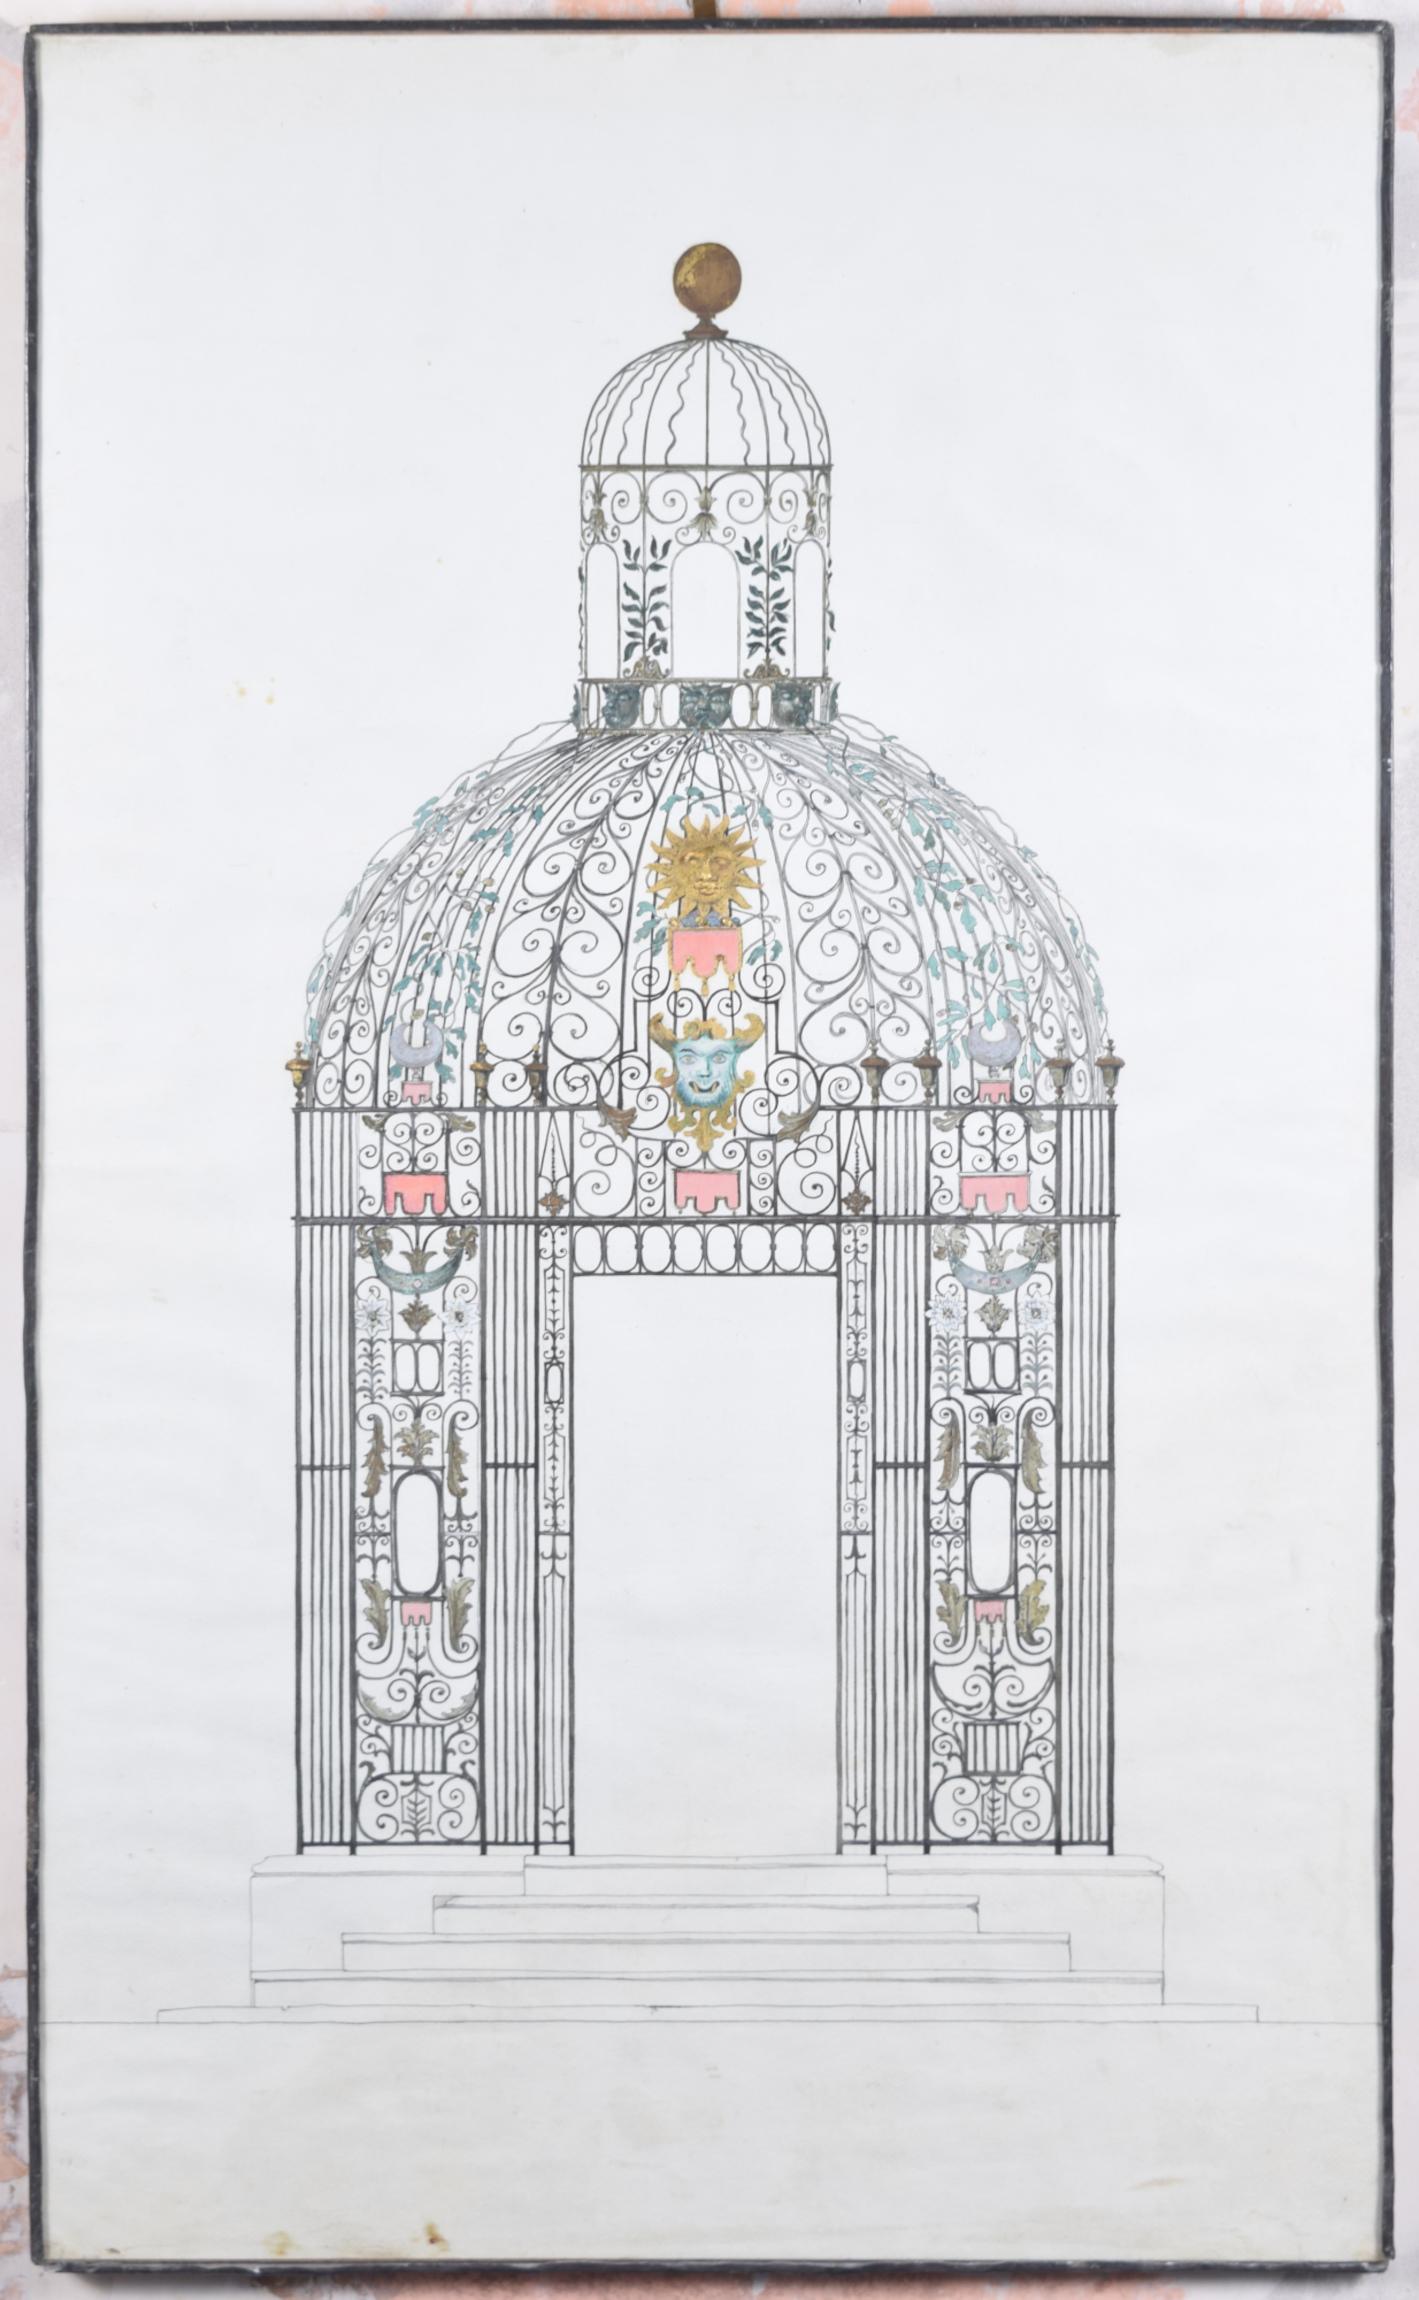 Louis Osman war ein englischer Künstler, Architekt, Goldschmied, Silberschmied und Medailleur. Er ist bekannt für das goldene Coronet, das er für die Amtseinführung von Charles, Prinz von Wales, im Jahr 1969 entworfen und hergestellt hat. Wir haben